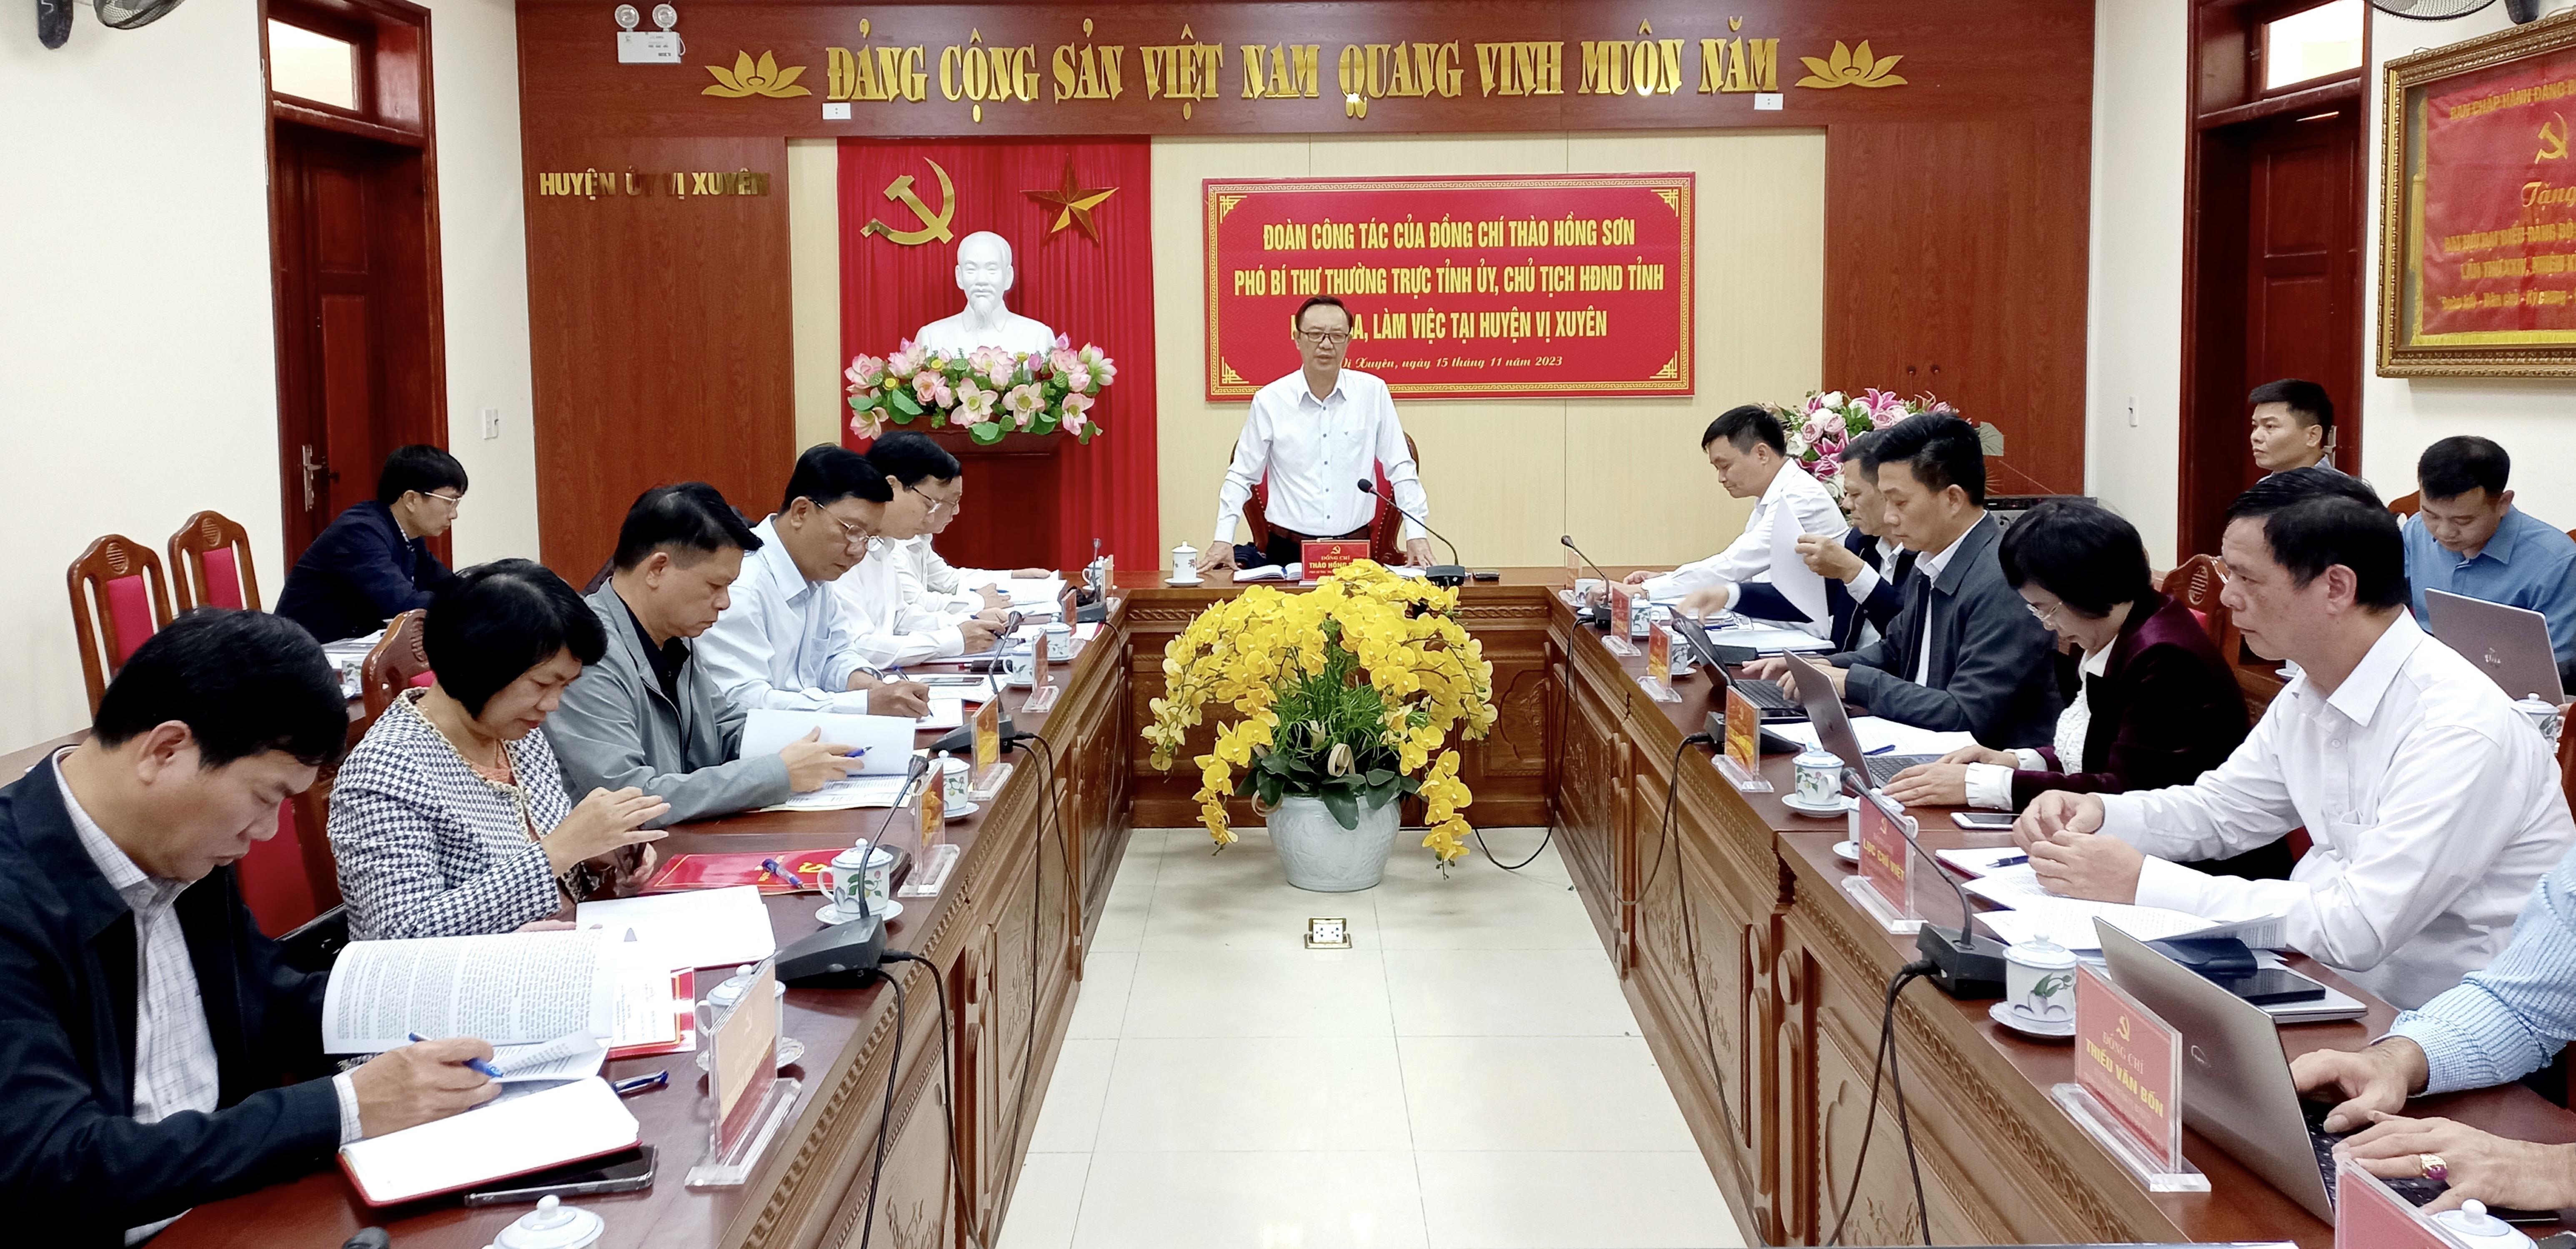 Phó Bí thư Thường trực Tỉnh ủy, Chủ tịch HĐND tỉnh Thào Hồng Sơn làm việc với BTV Huyện ủy Vị Xuyên.